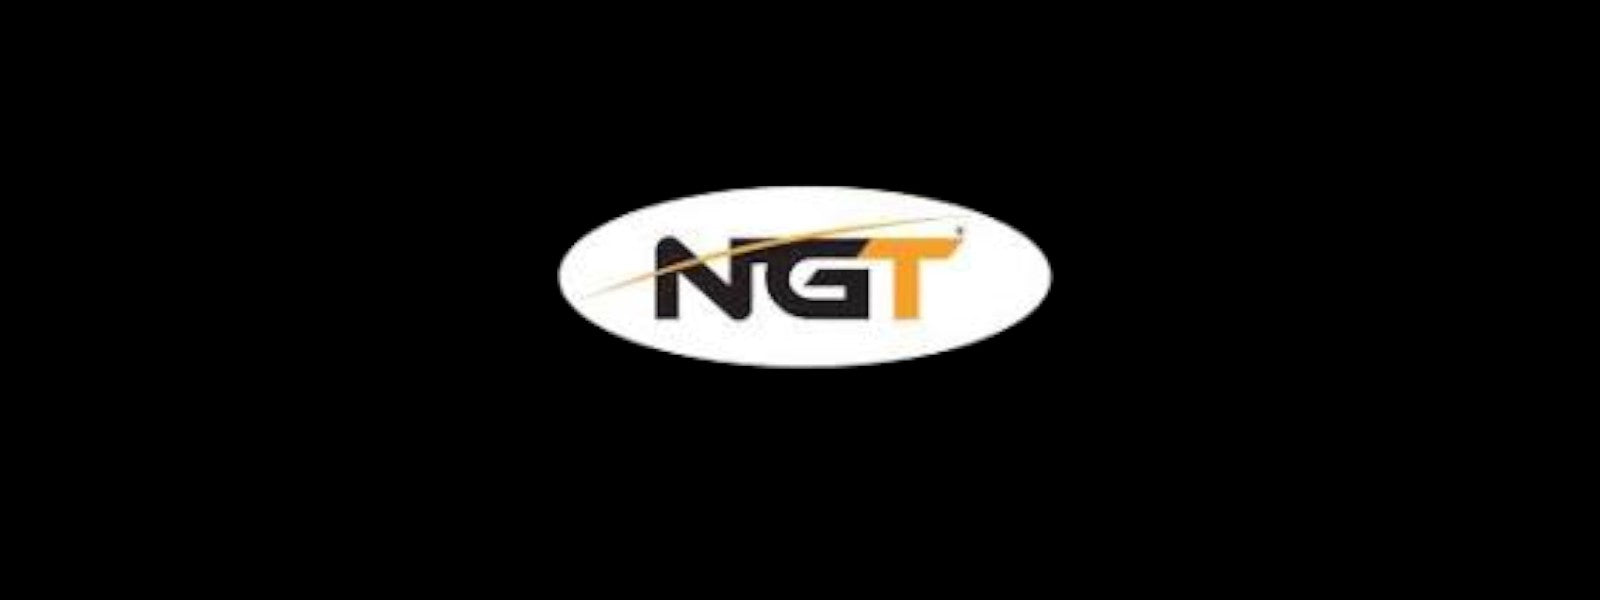 NGT – Stevenage Bait and Tackle Ltd